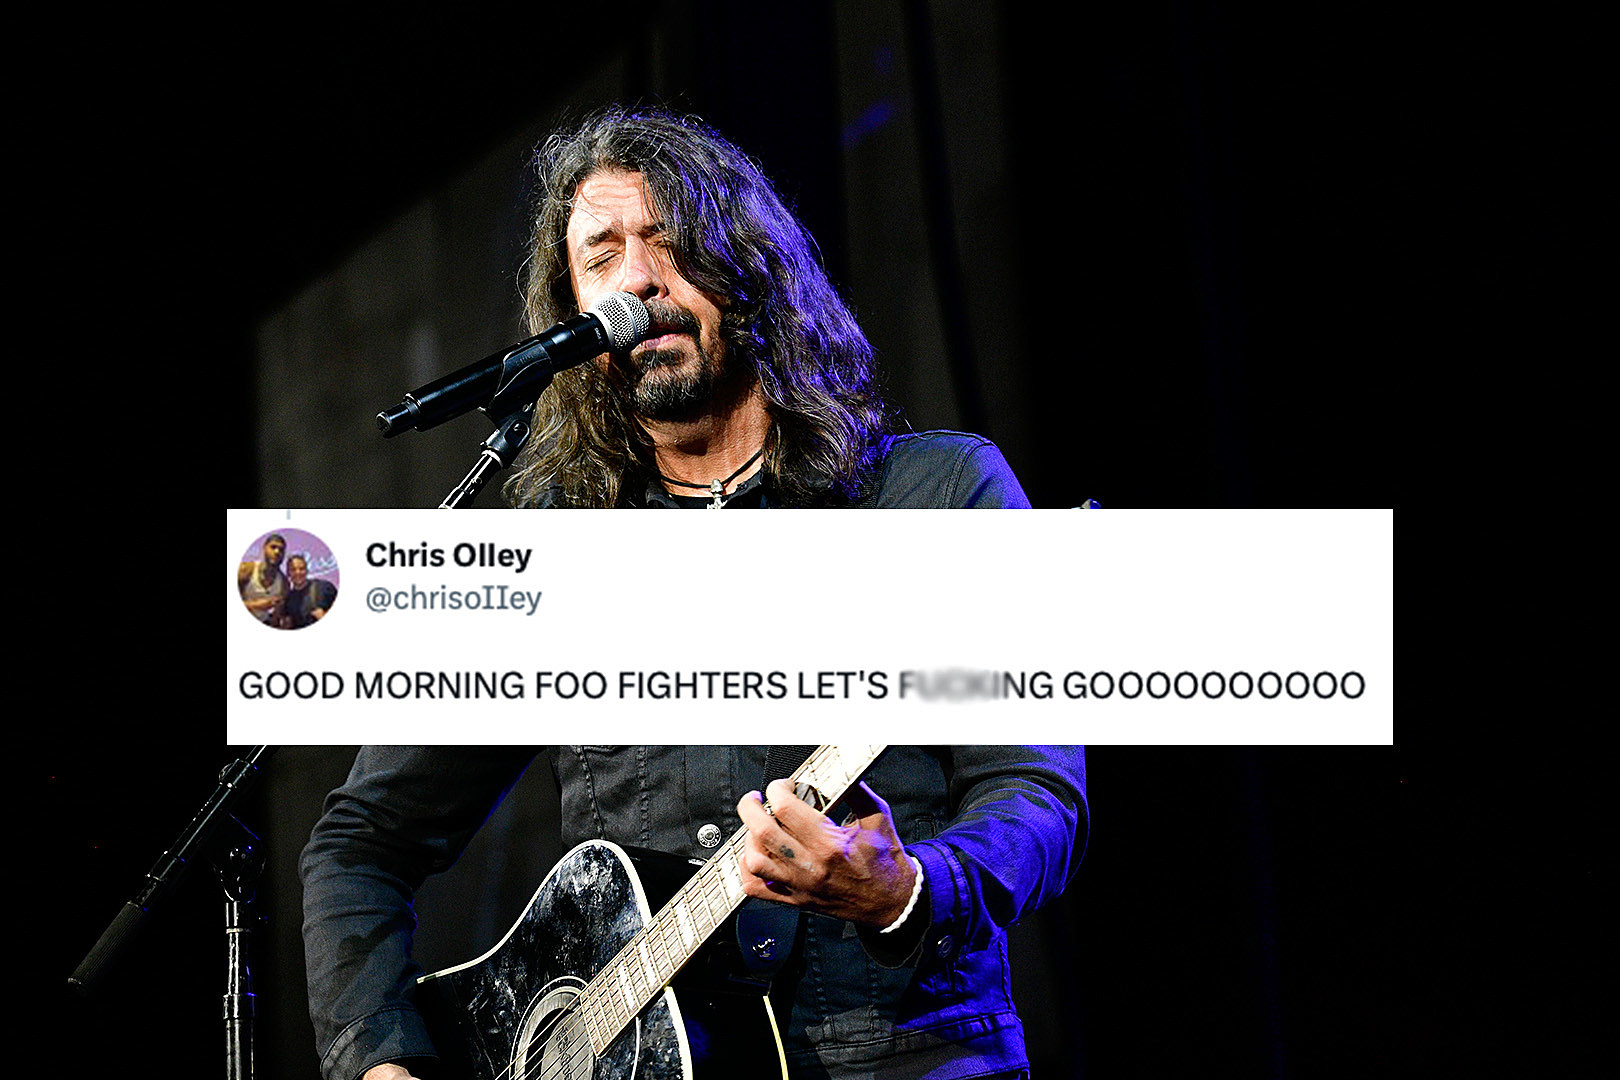 Foo Fighters - Greatest Hits Lyrics and Tracklist